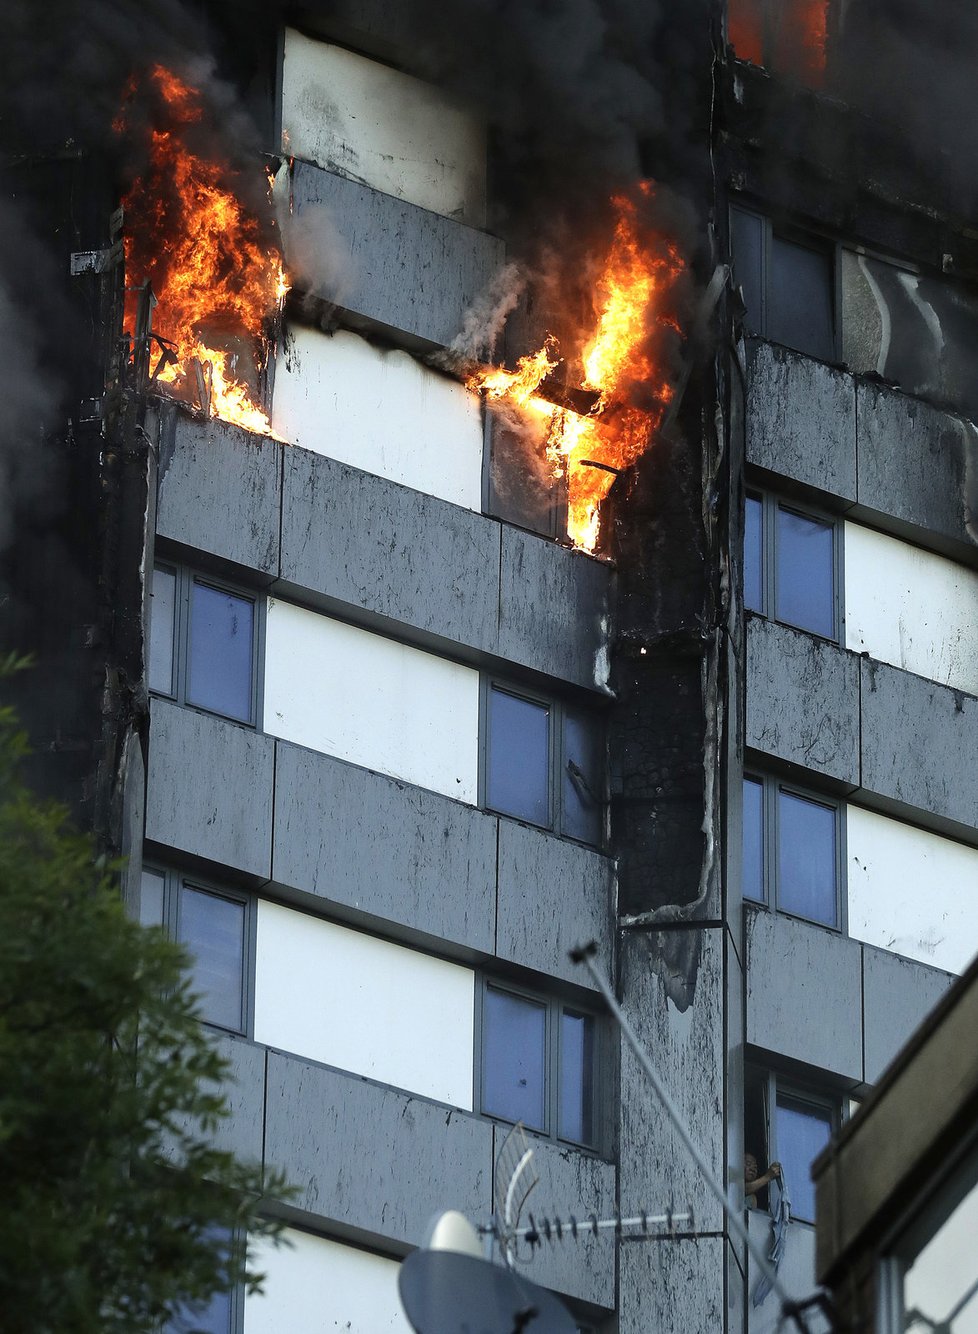 Masivní požár obytného domu v Londýně.